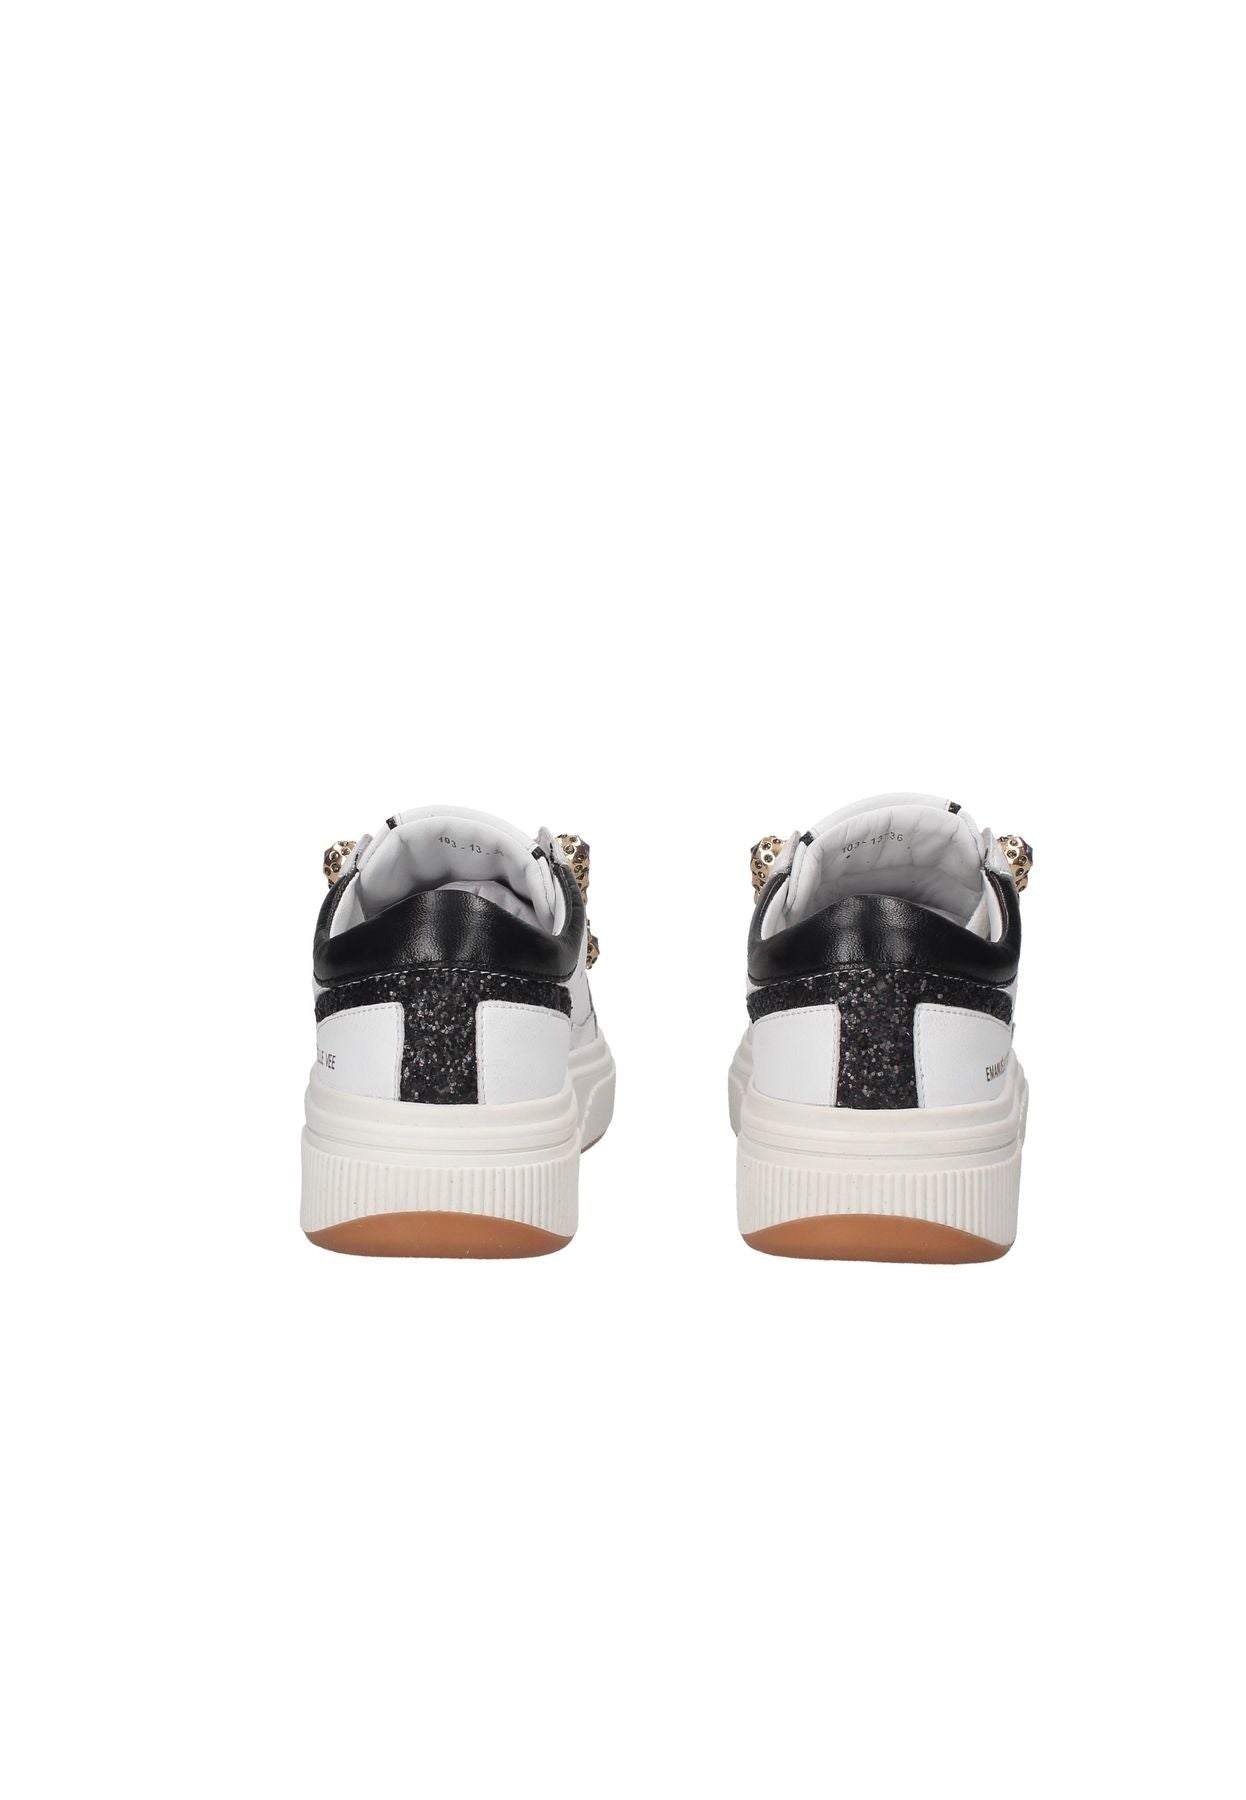 441P-103-13-P003 Emanuelle Vee sneakers